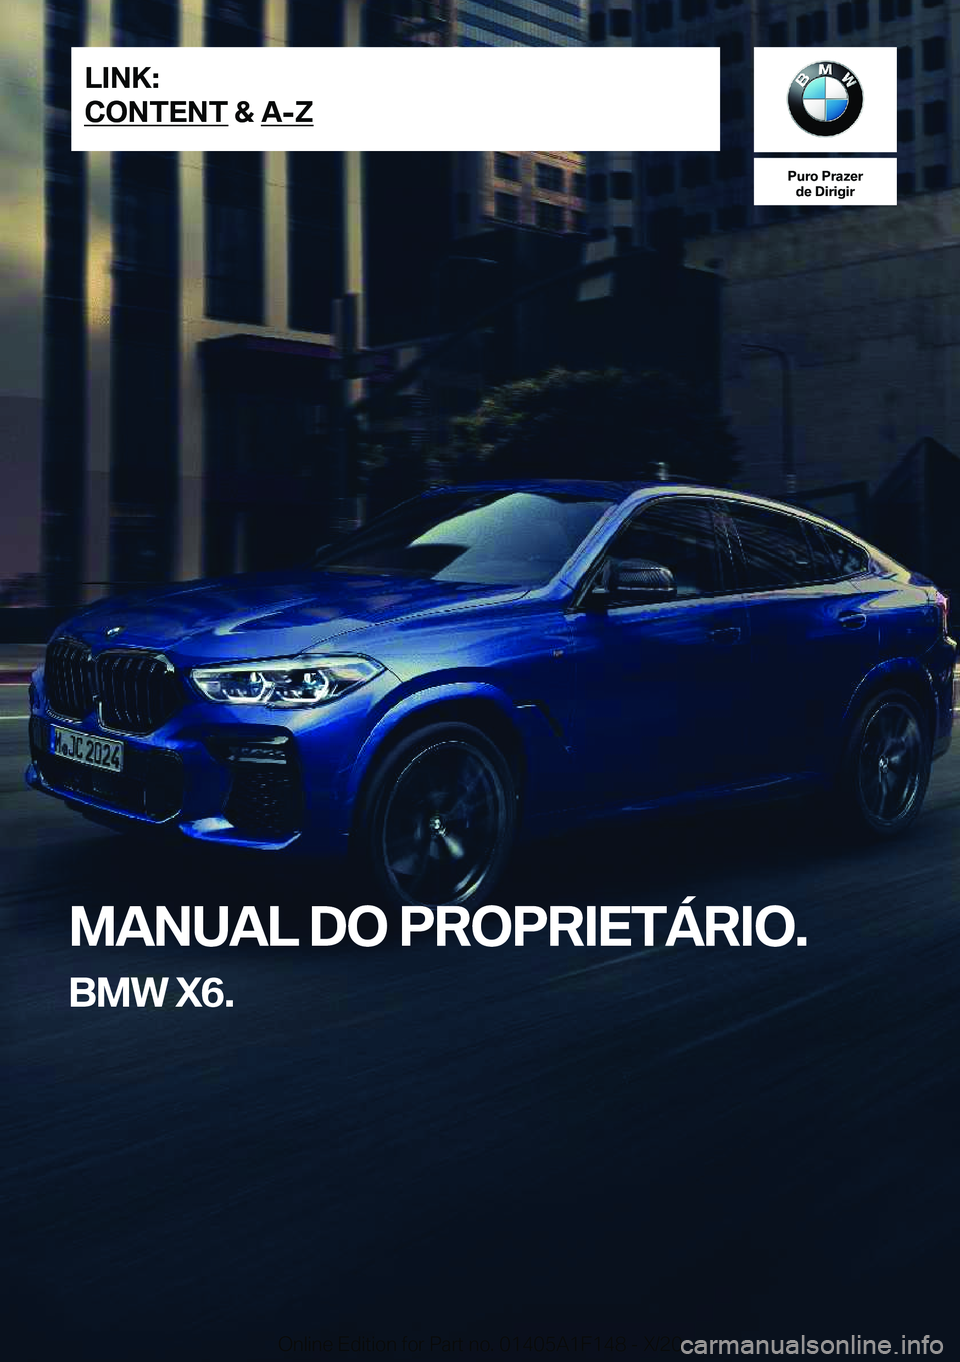 BMW X6 2021  Manual do condutor (in Portuguese) �P�u�r�o��P�r�a�z�e�r�d�e��D�i�r�i�g�i�r
�M�A�N�U�A�L��D�O��P�R�O�P�R�I�E�T�Á�R�I�O�.
�B�M�W��X�6�.�L�I�N�K�:
�C�O�N�T�E�N�T��&��A�-�Z�O�n�l�i�n�e��E�d�i�t�i�o�n��f�o�r��P�a�r�t��n�o�.��0